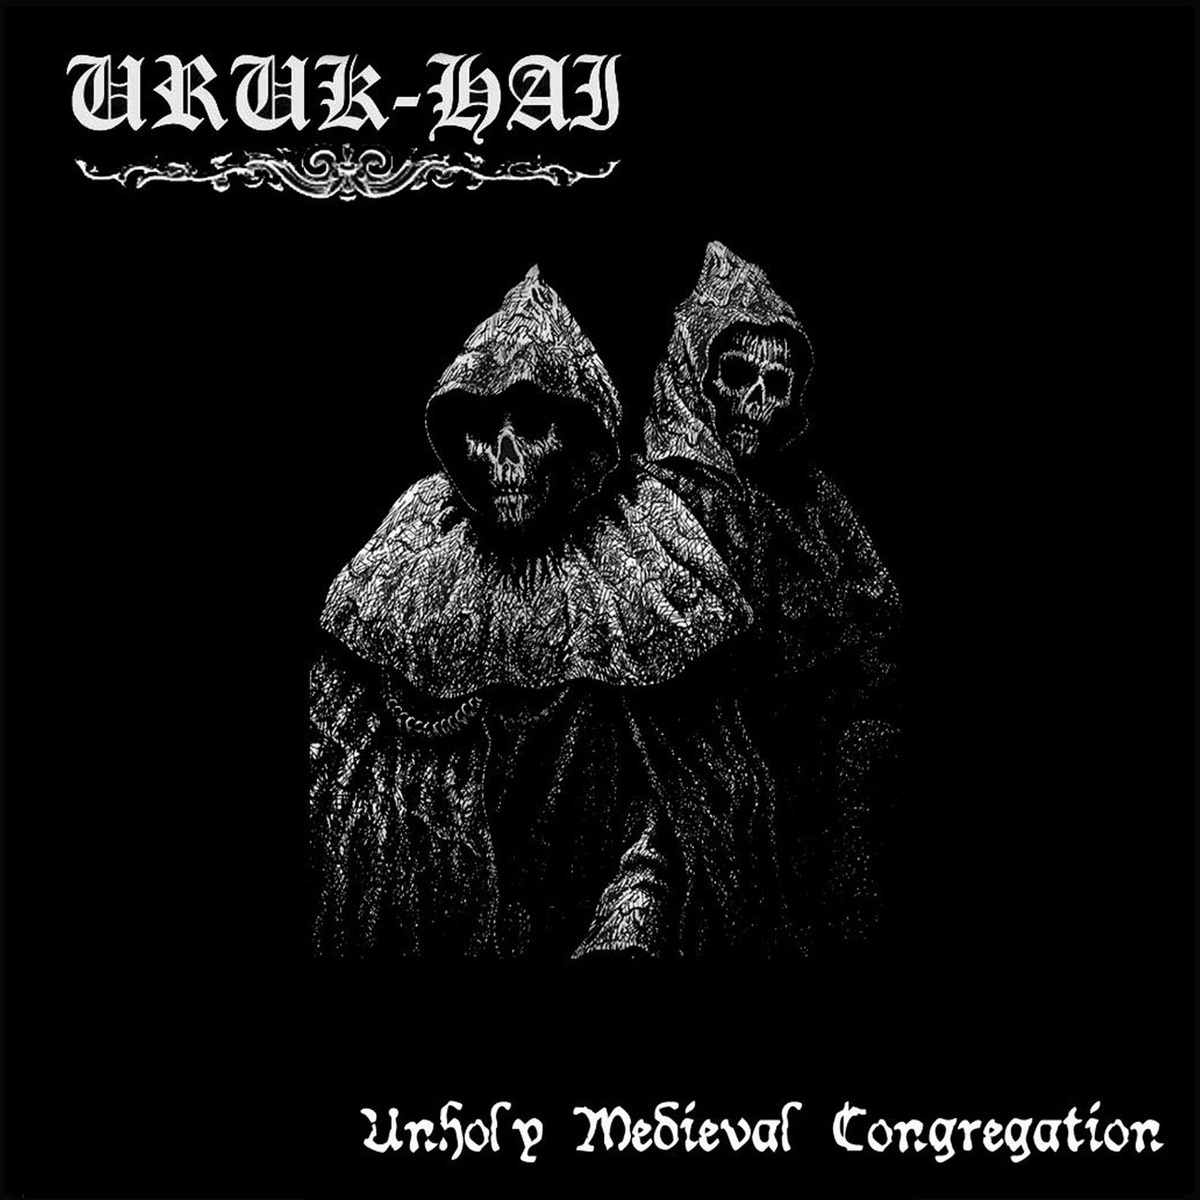 Uruk-Hai - Unholy Medieval Congregation